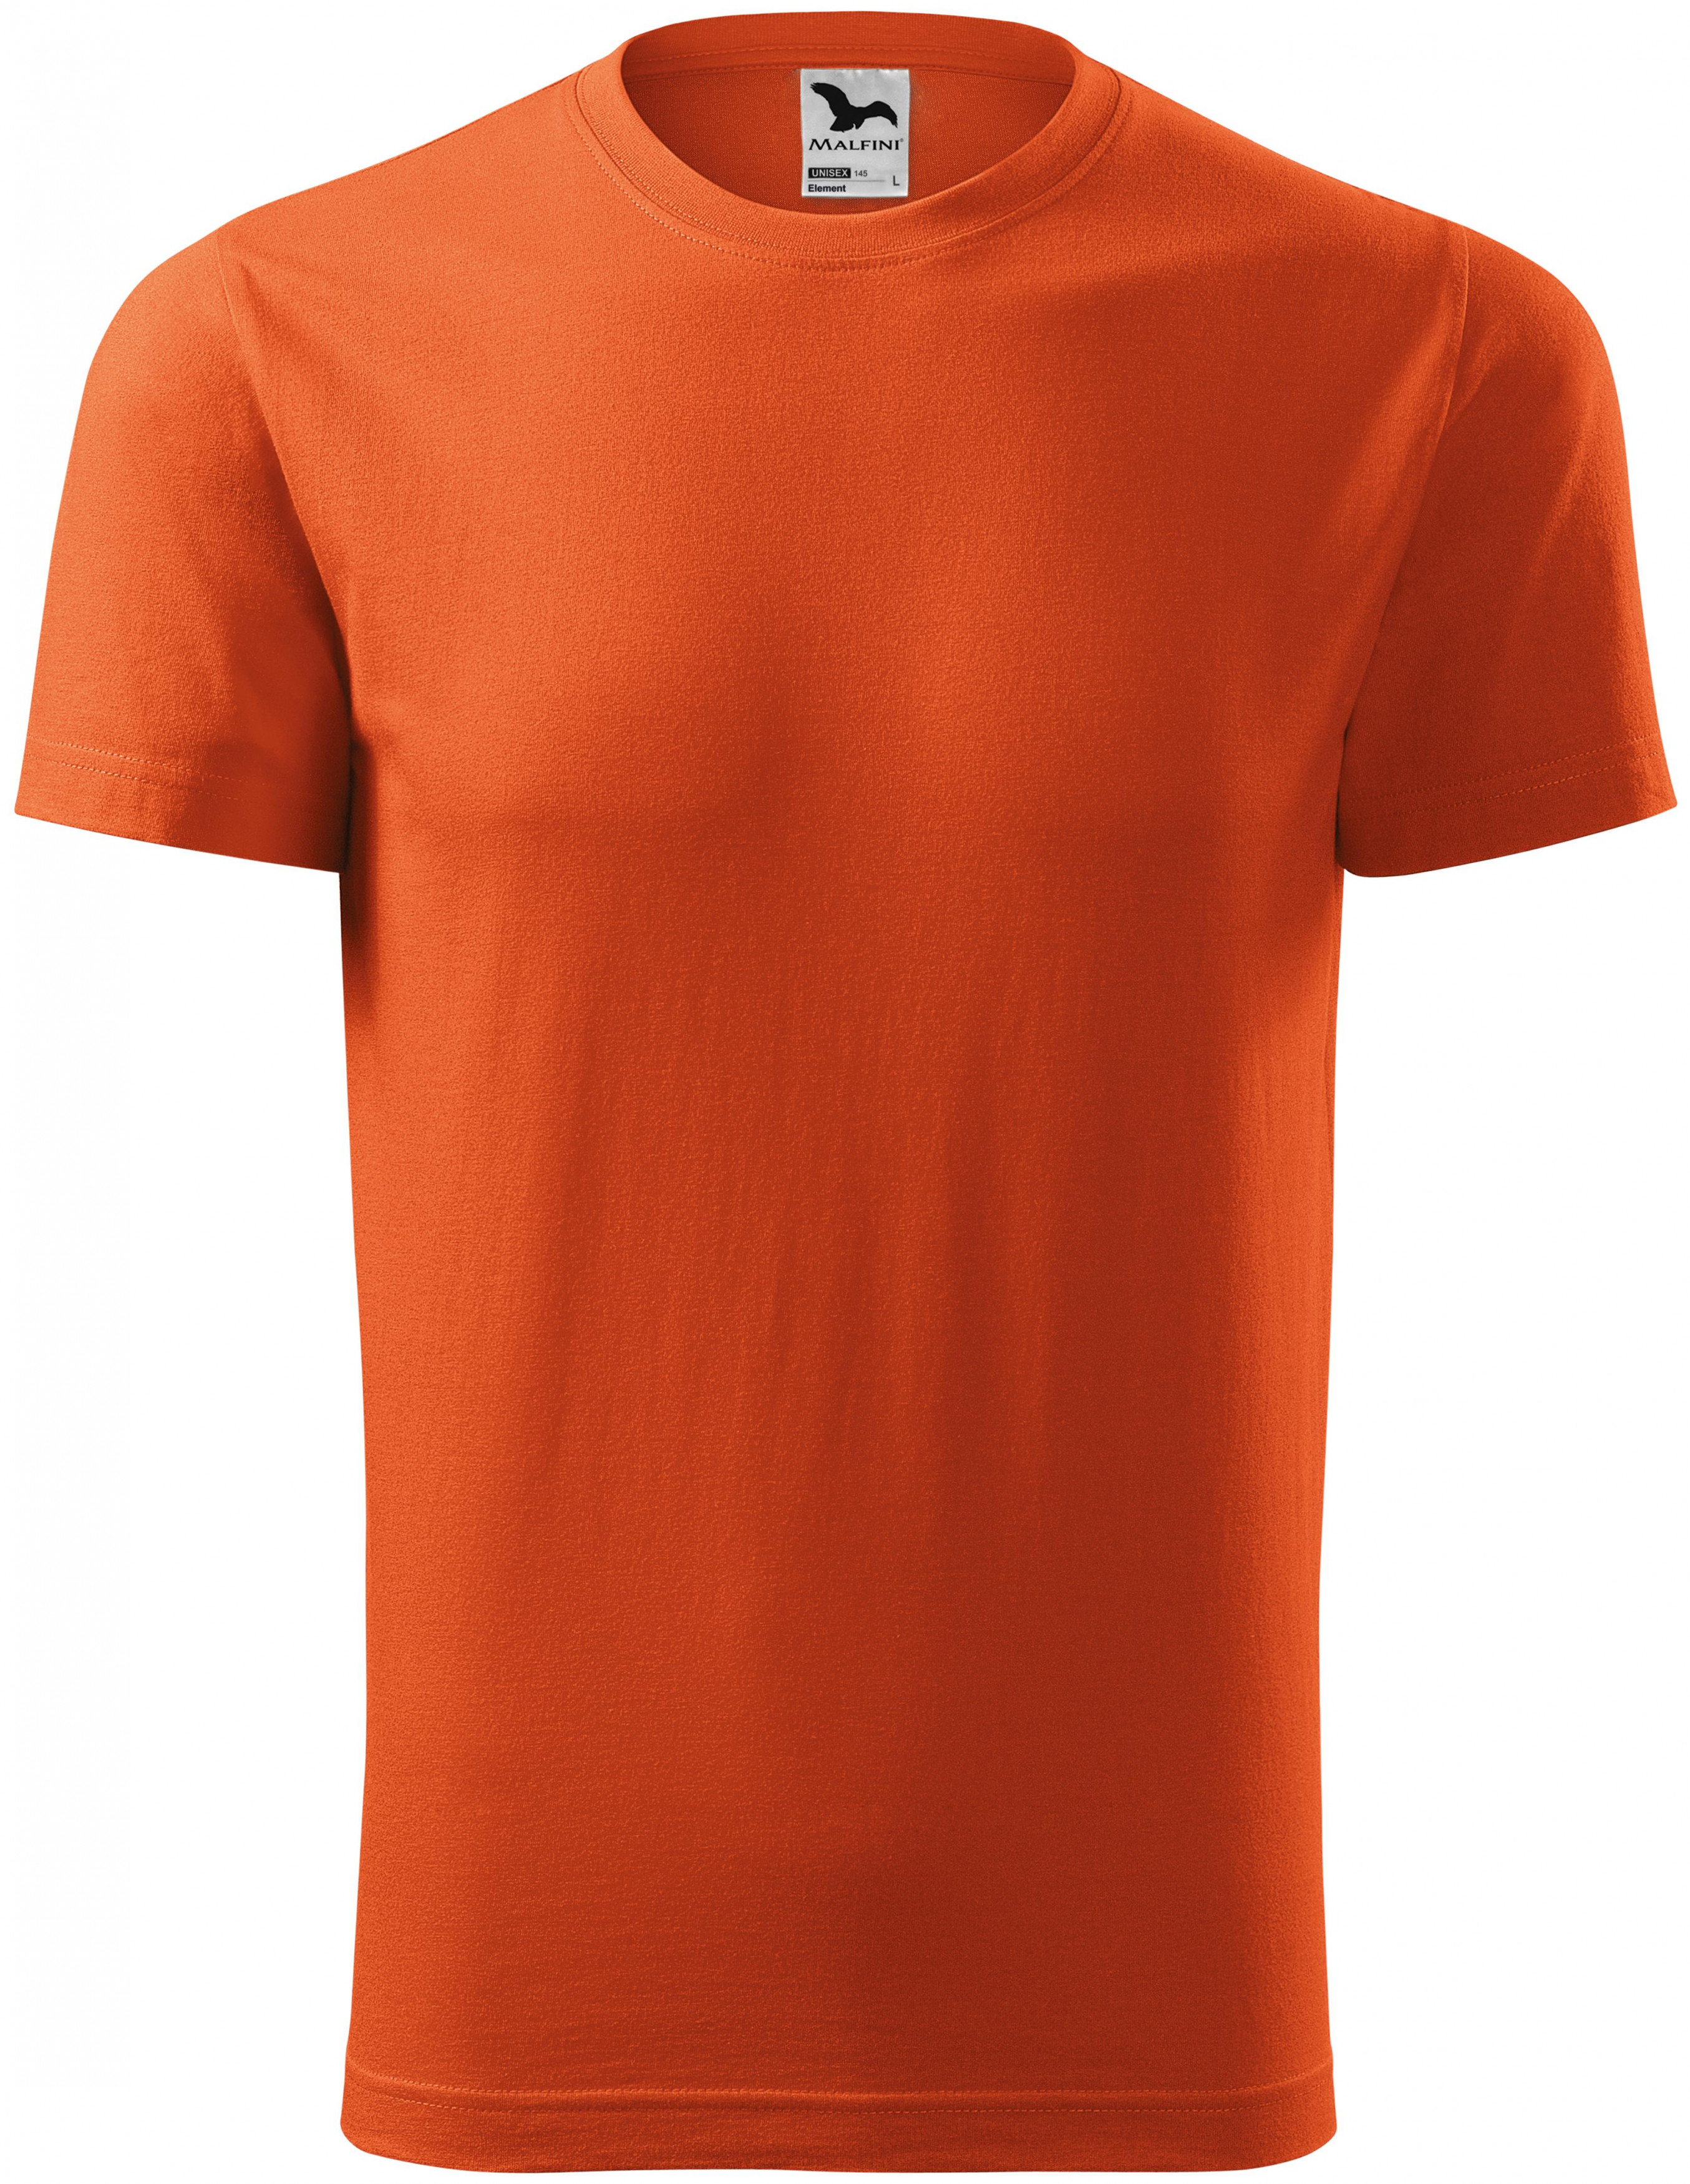 Tričko s krátkym rukávom, oranžová, S